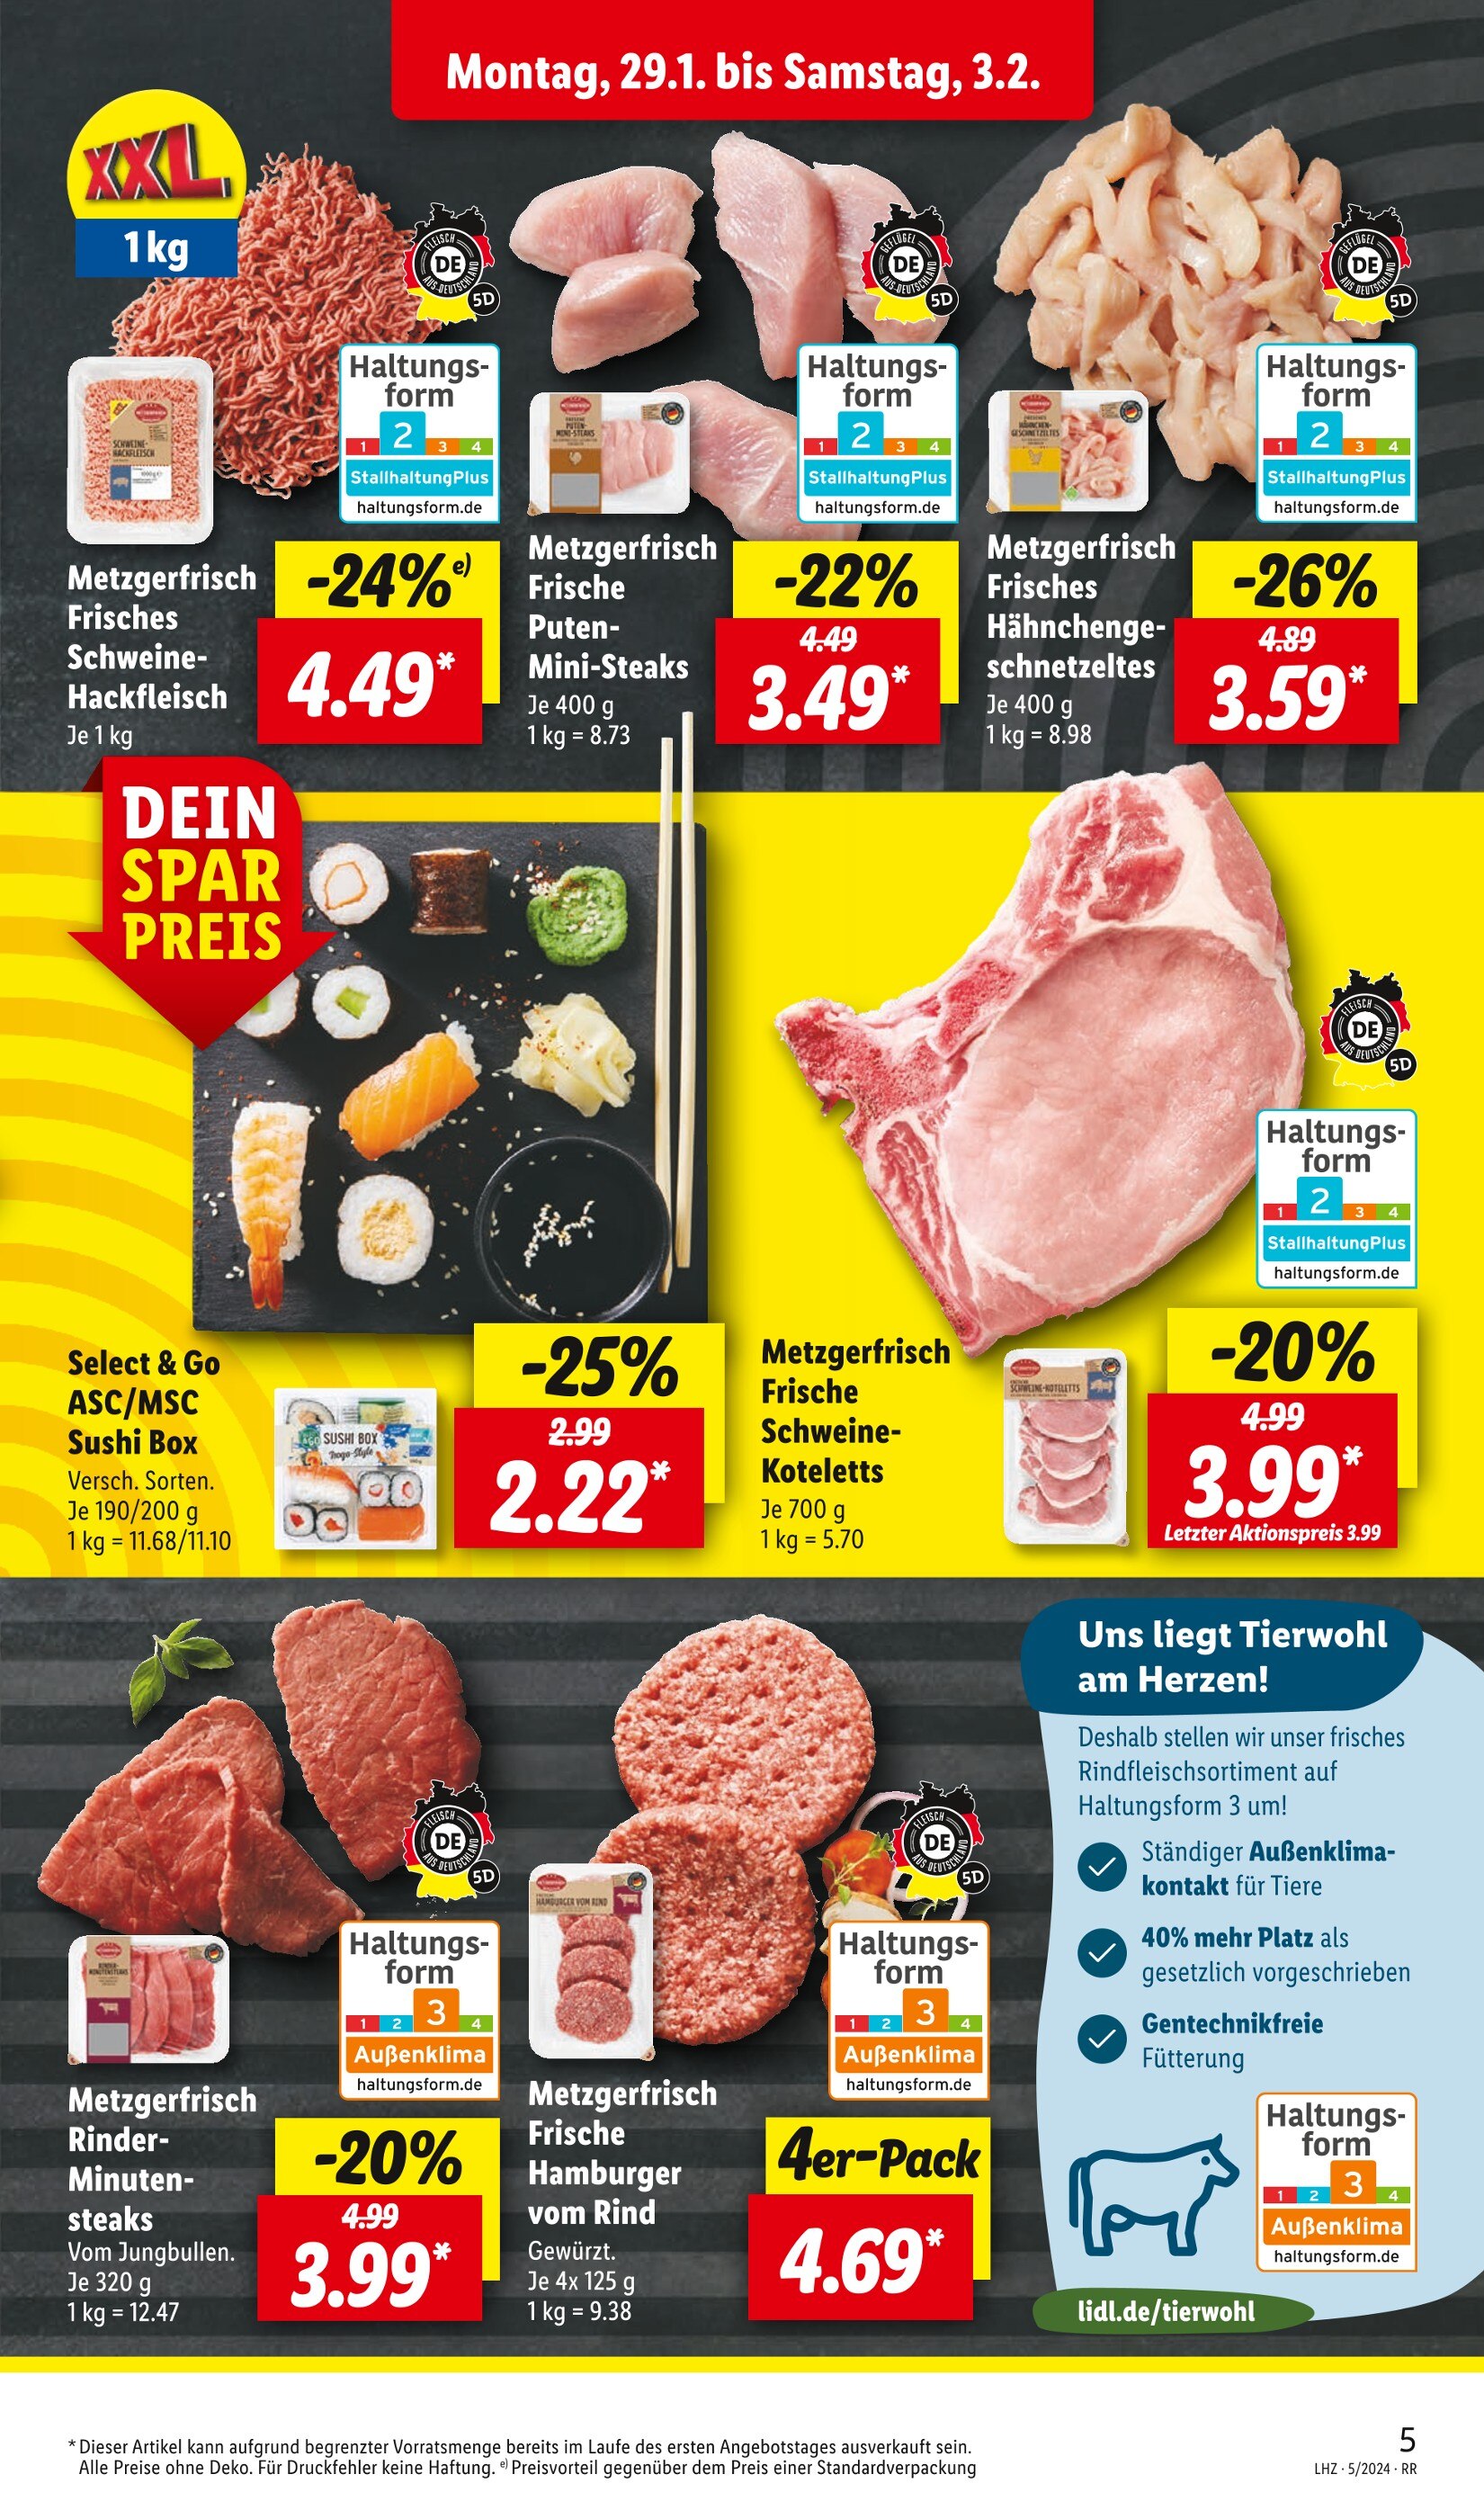 Steak Angebote in Gelsenkirchen - jetzt günstig kaufen! 🔥